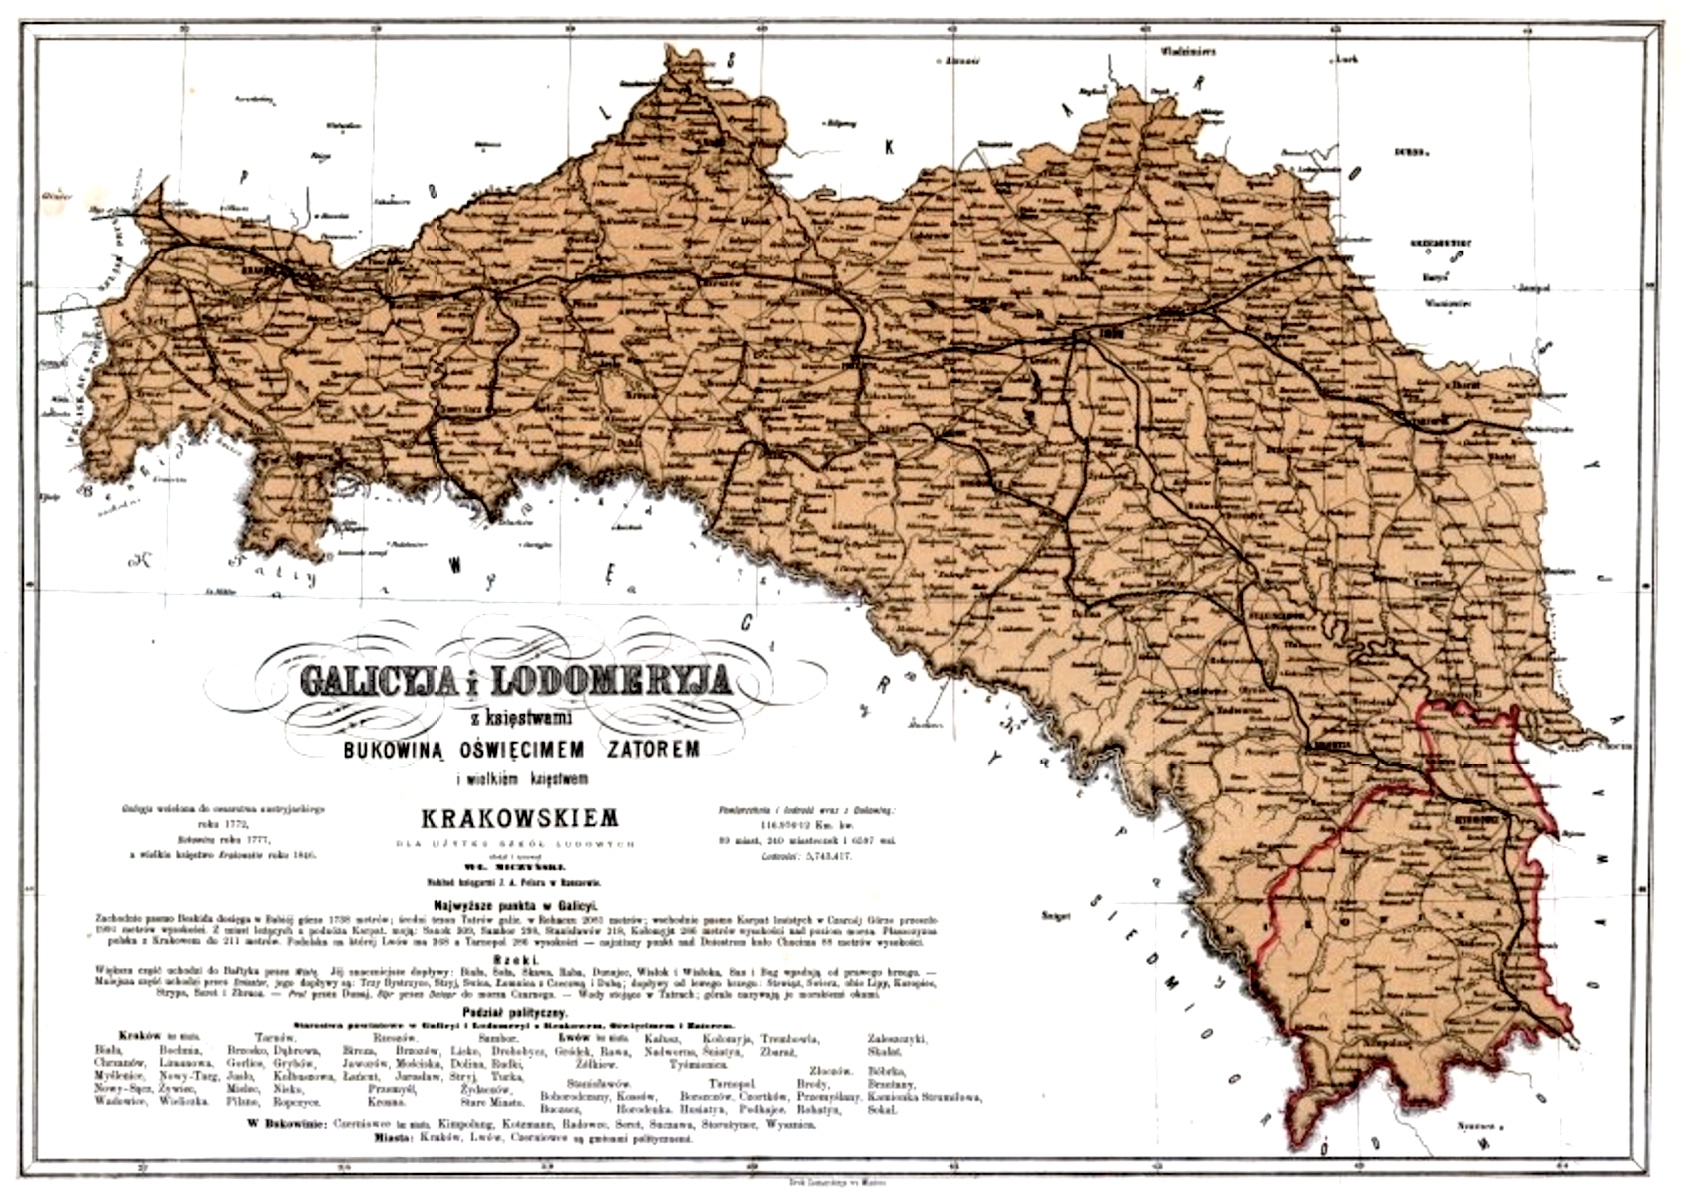 1872 school map of Galicia by Władysław Miczyński